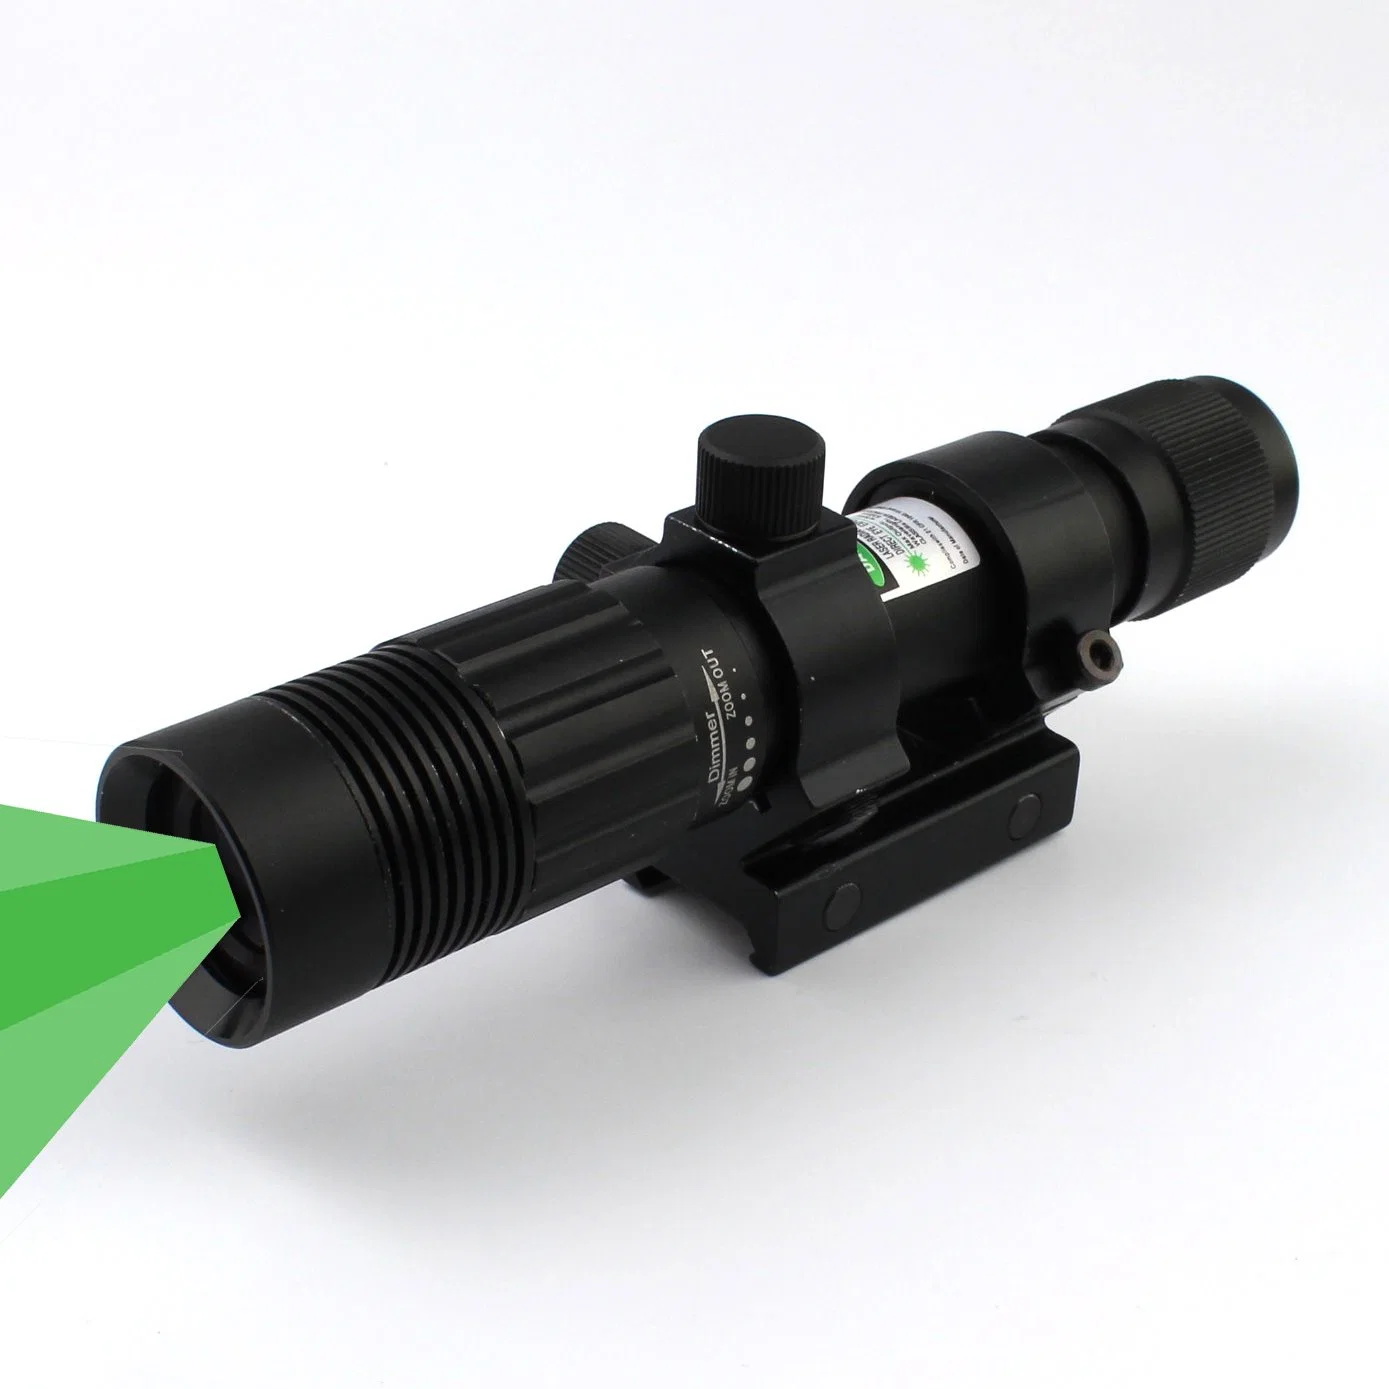 Проводной переключатель для решения Night Vision Scope и кольцо осциллографа В комплект входит зеленый ослепительный лазерный сканер и фонарик-фонарик с подсветкой